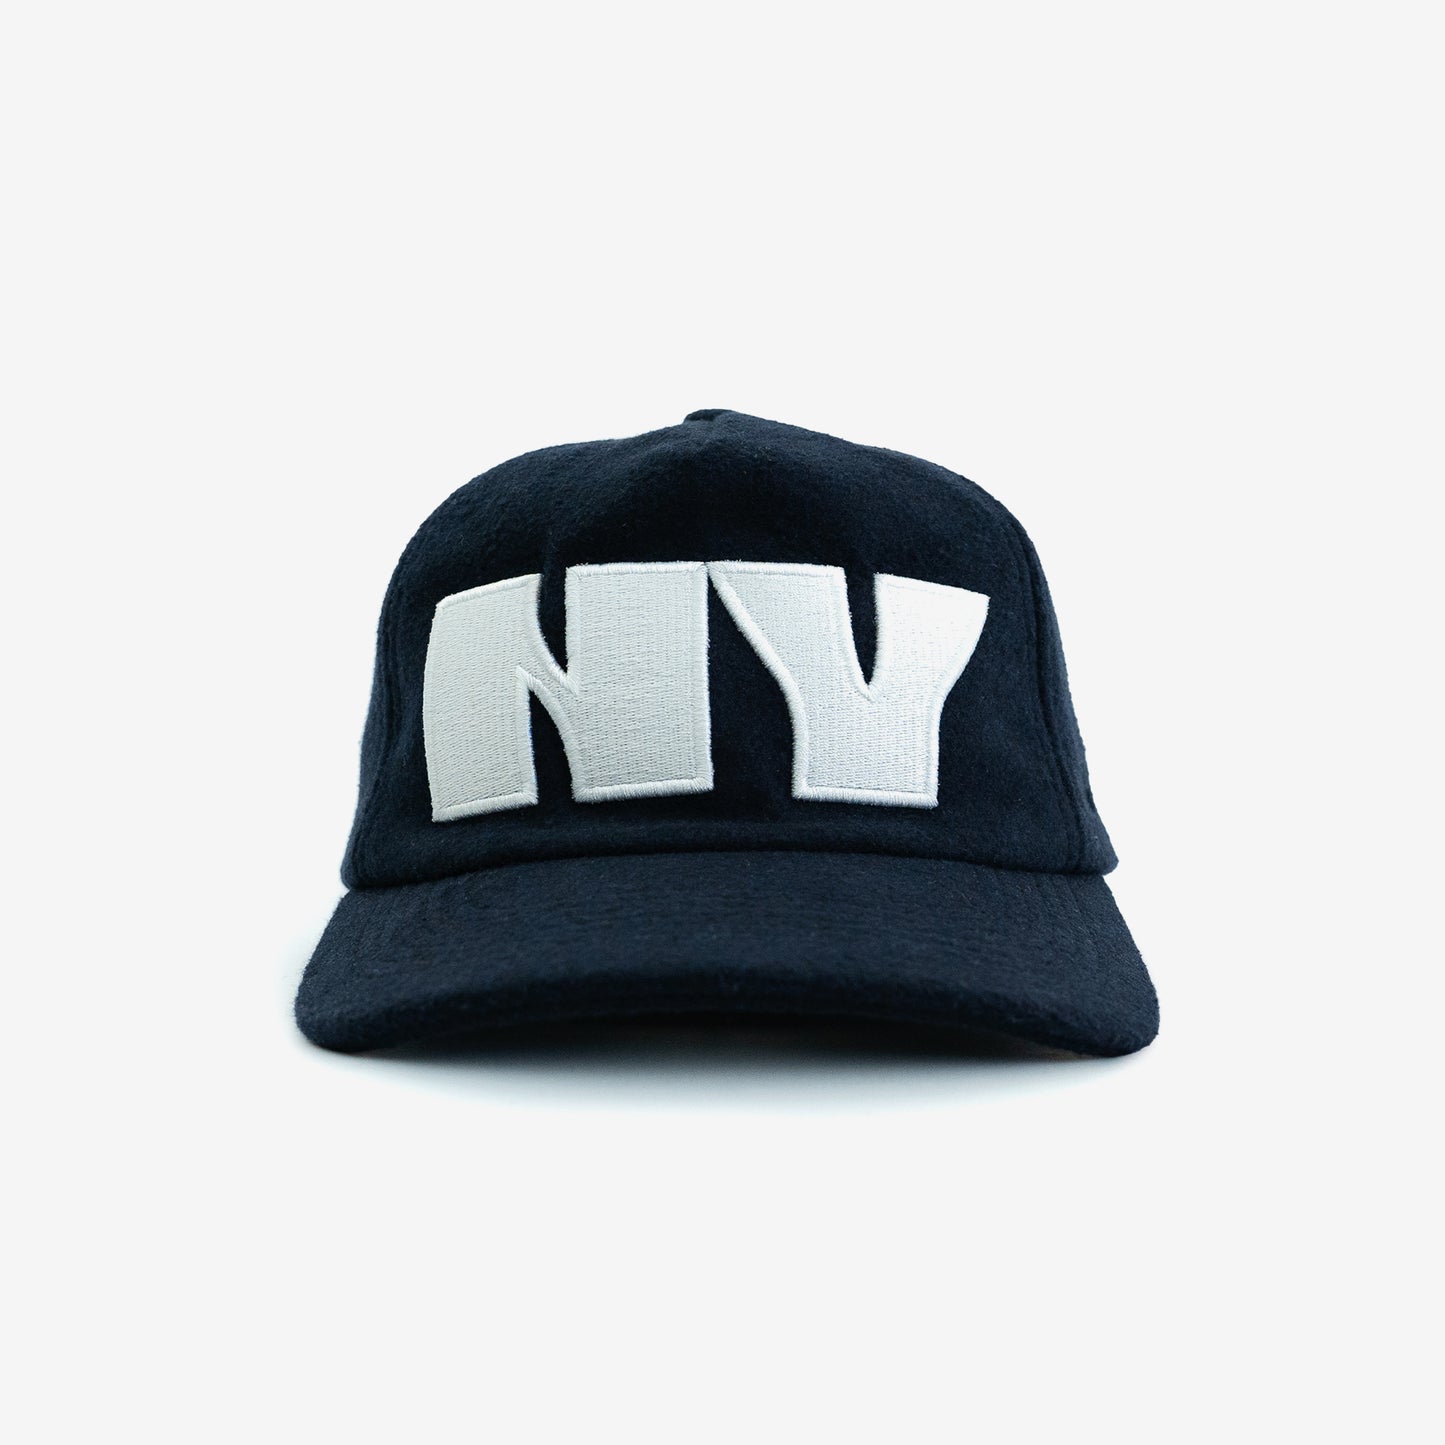 The "NY" Block Hat